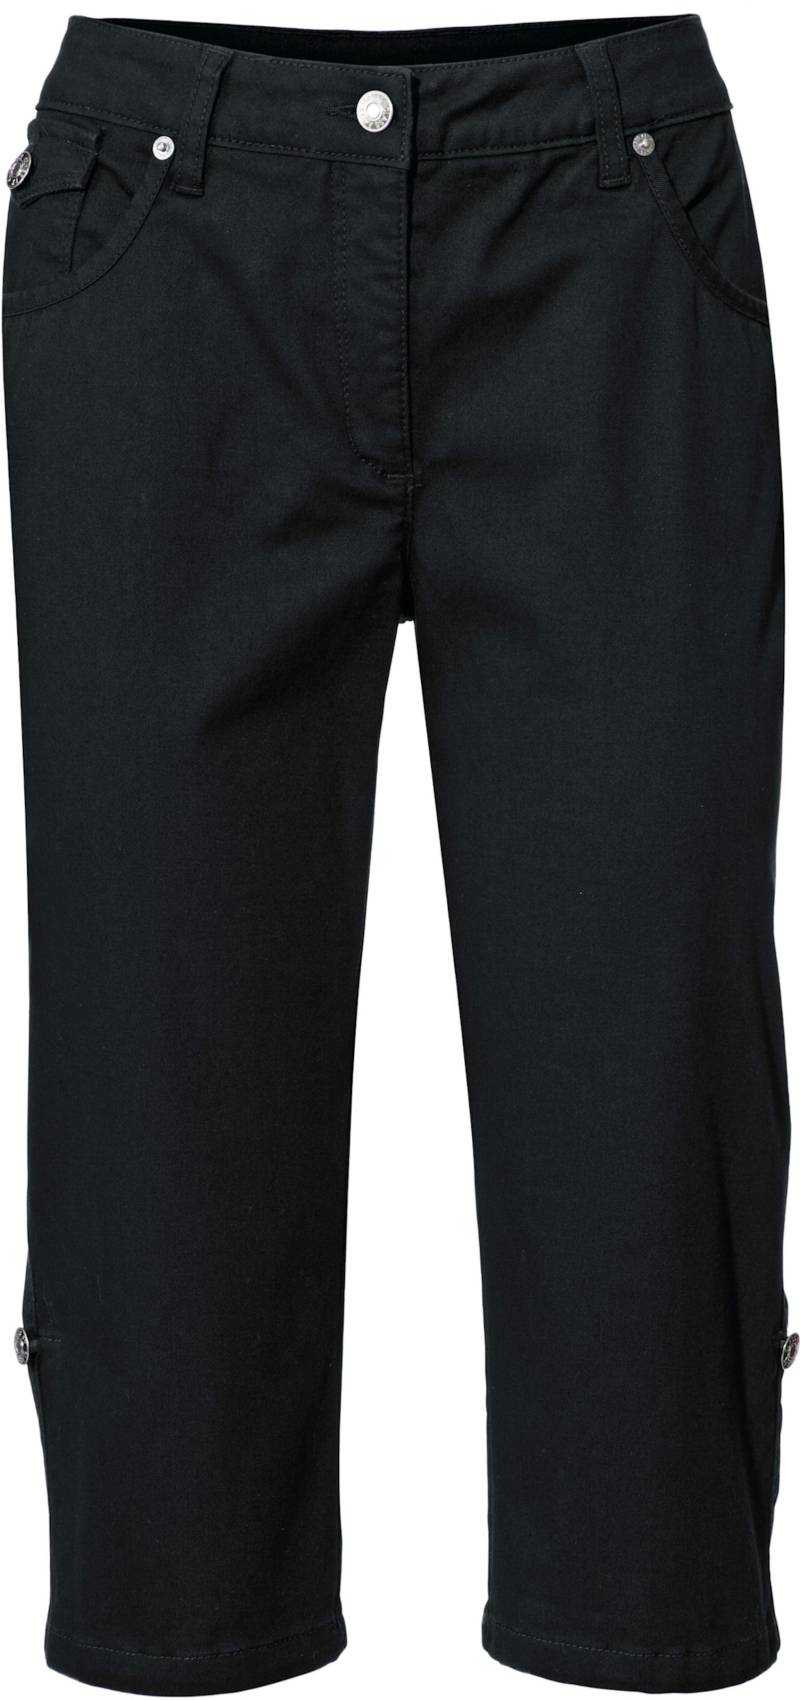 Capri-Jeans in schwarz von heine